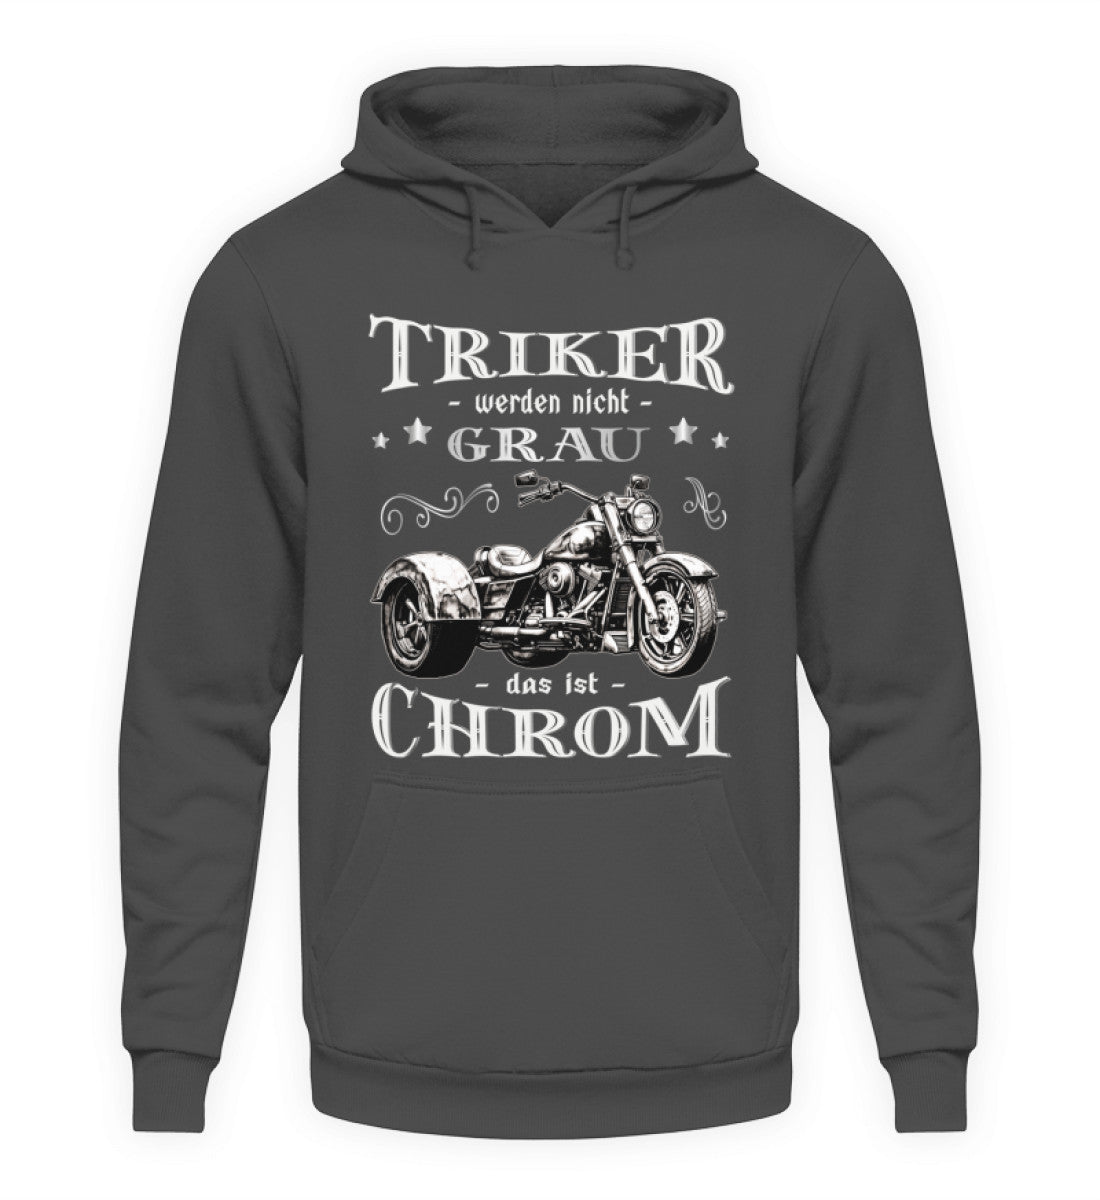 Ein Triker Hoodie für Trikefahrer von Wingbikers mit dem Aufdruck, Triker werden nicht grau - Das ist Chrom, in dunkelgrau.